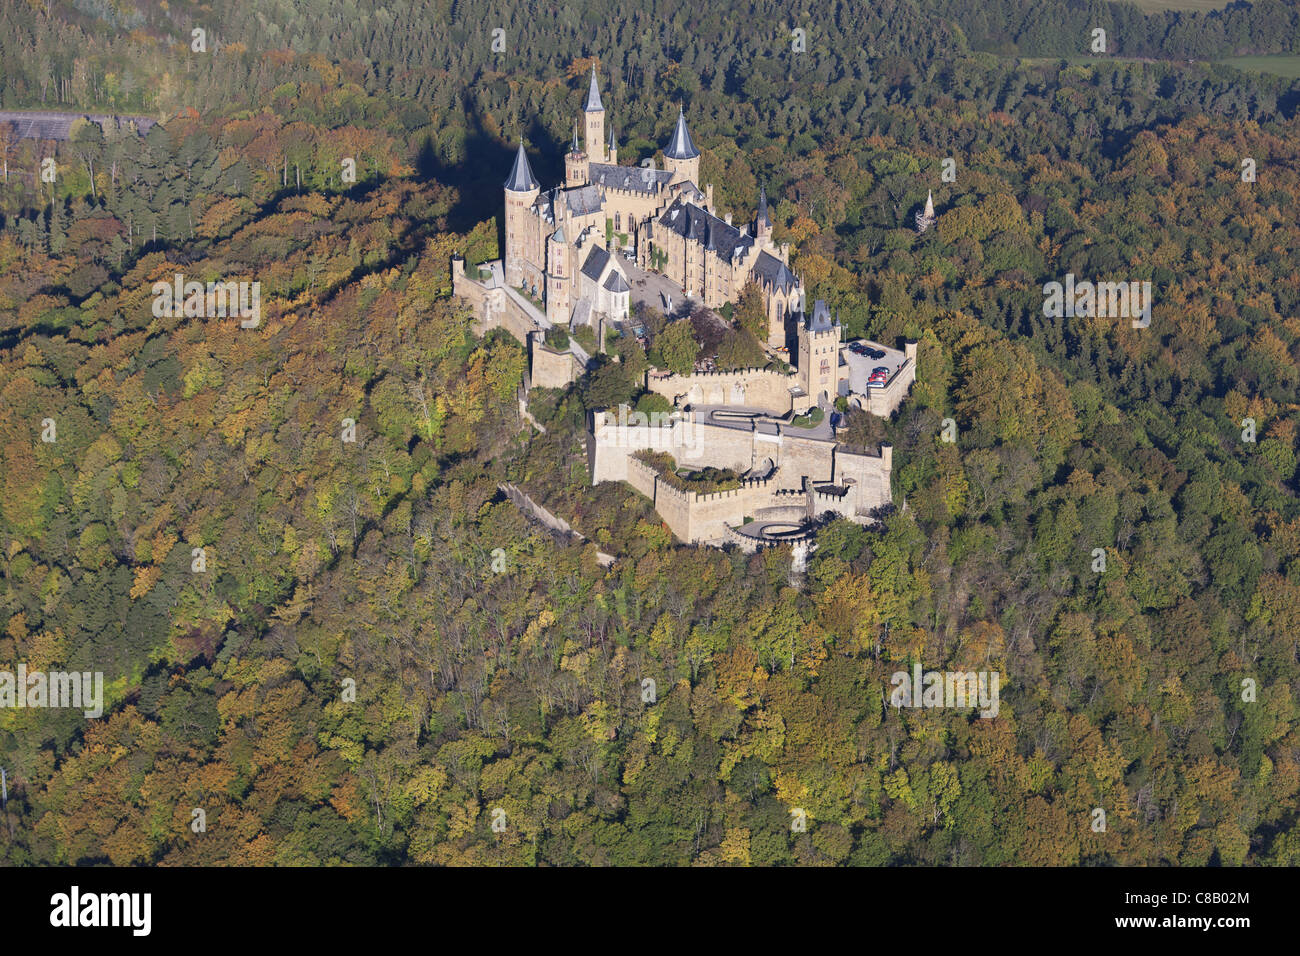 LUFTAUFNAHME. Schloss auf einem bewaldeten Hügel mit herbstlichen Farben.  Schloss Hohenzollern, Hechingen, Baden-Württemberg, Deutschland  Stockfotografie - Alamy